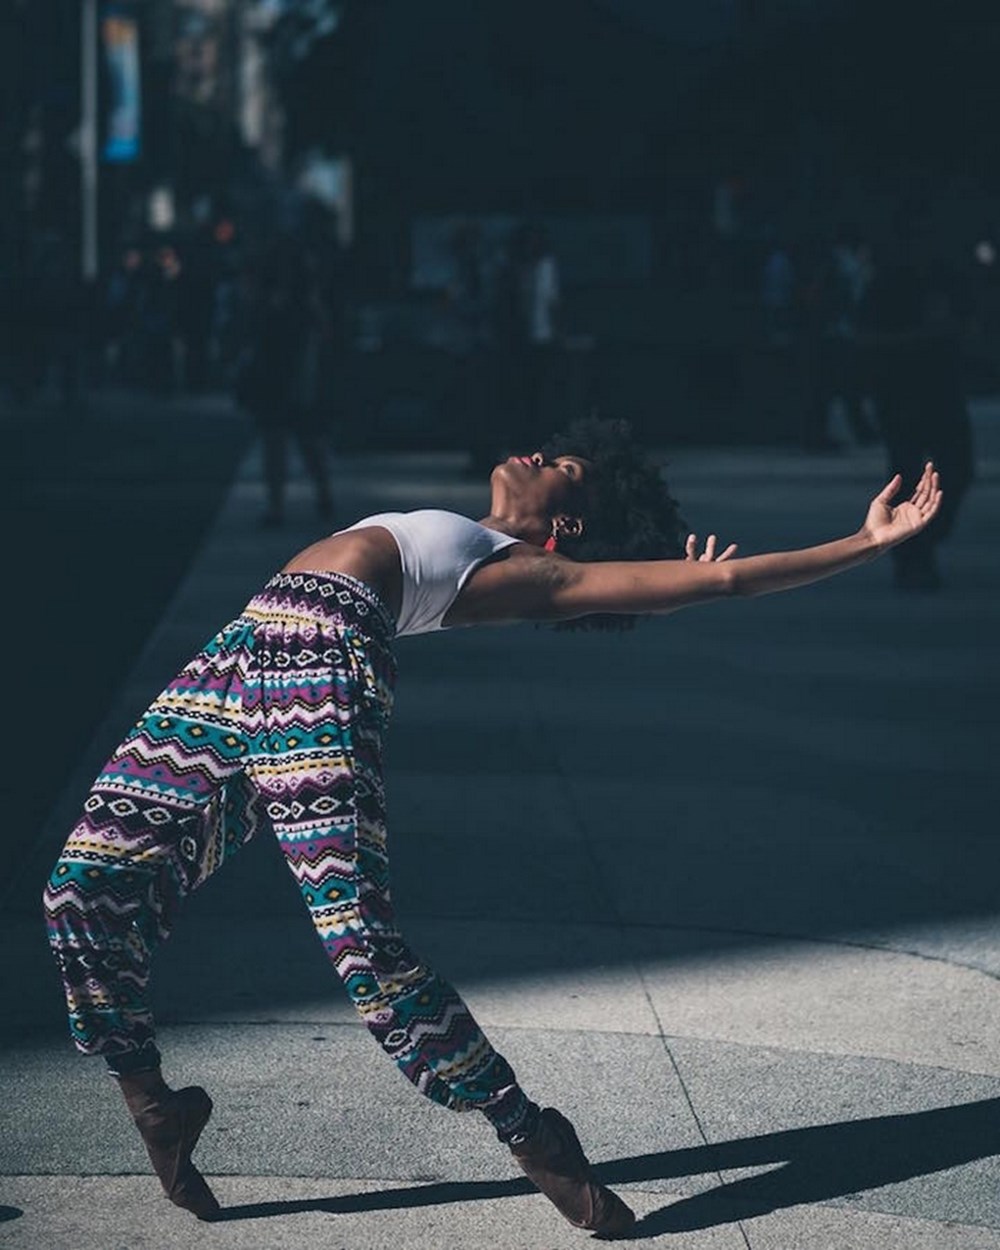 Нестандартные движения. Фотограф Омар Роблес балет. Современные танцы. Танцы Эстетика. Уличные танцоры.